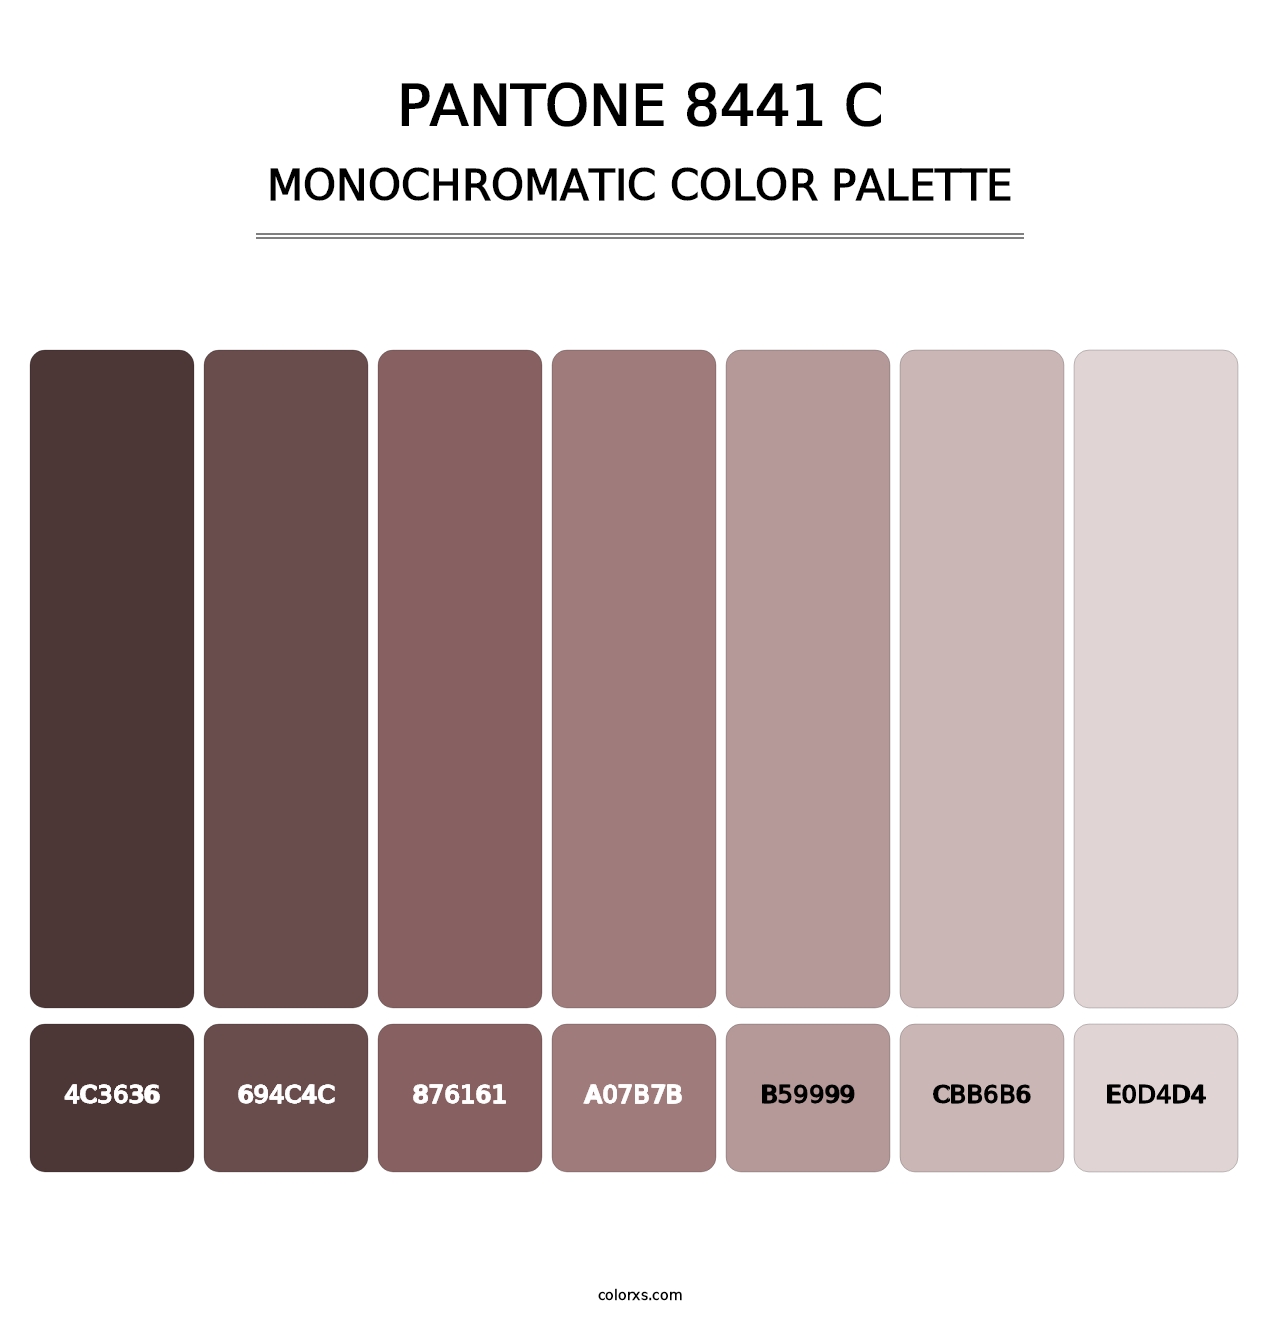 PANTONE 8441 C - Monochromatic Color Palette